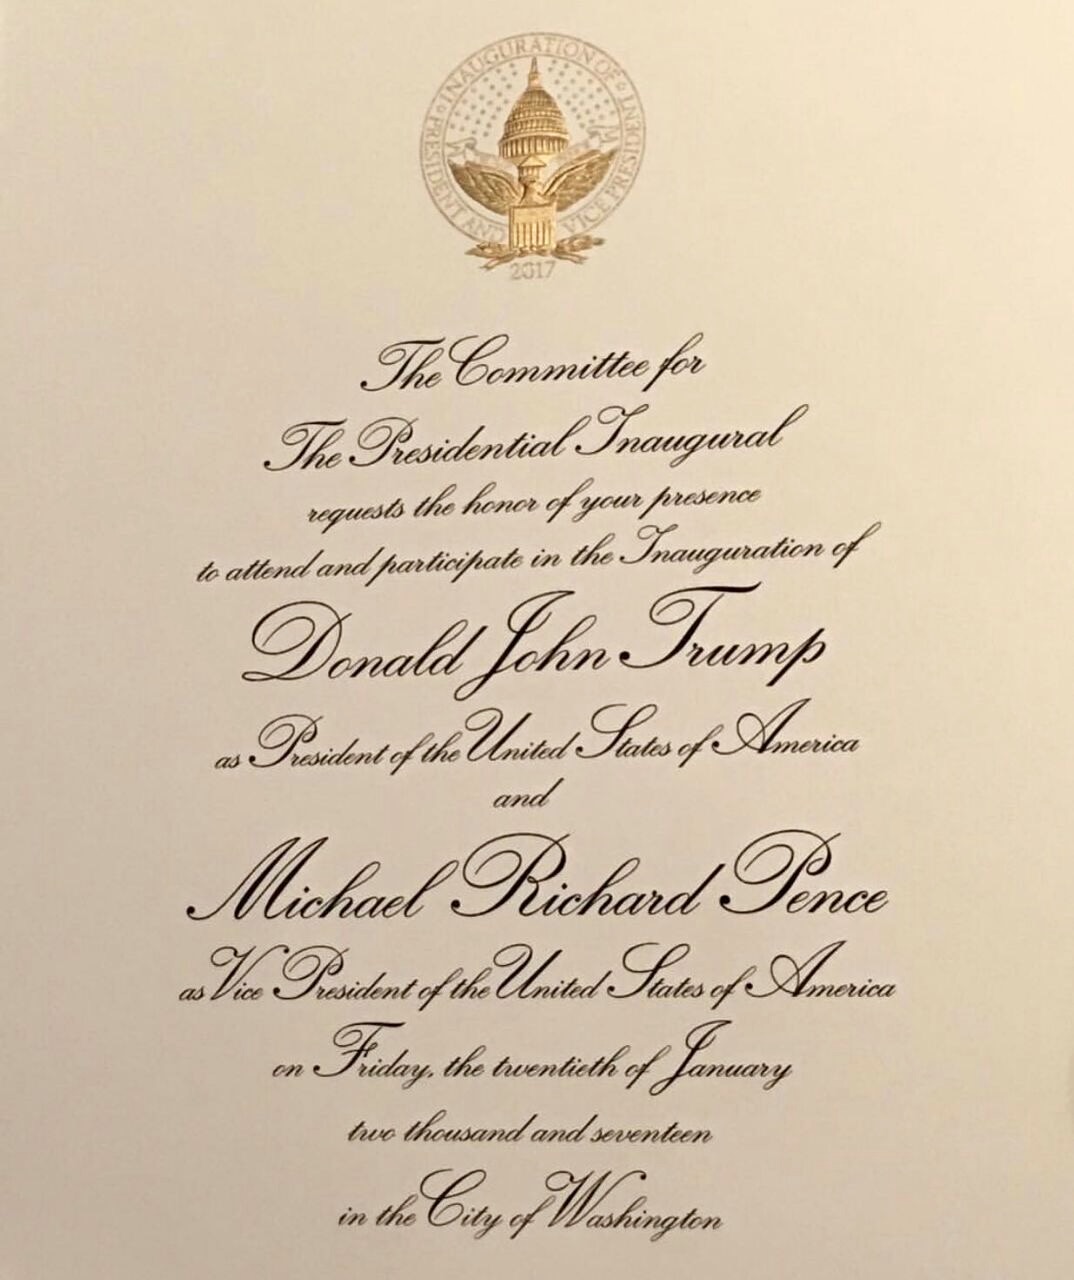 convite oficial da posse do Donald Trump na Presidência dos Estados Unidos da América.